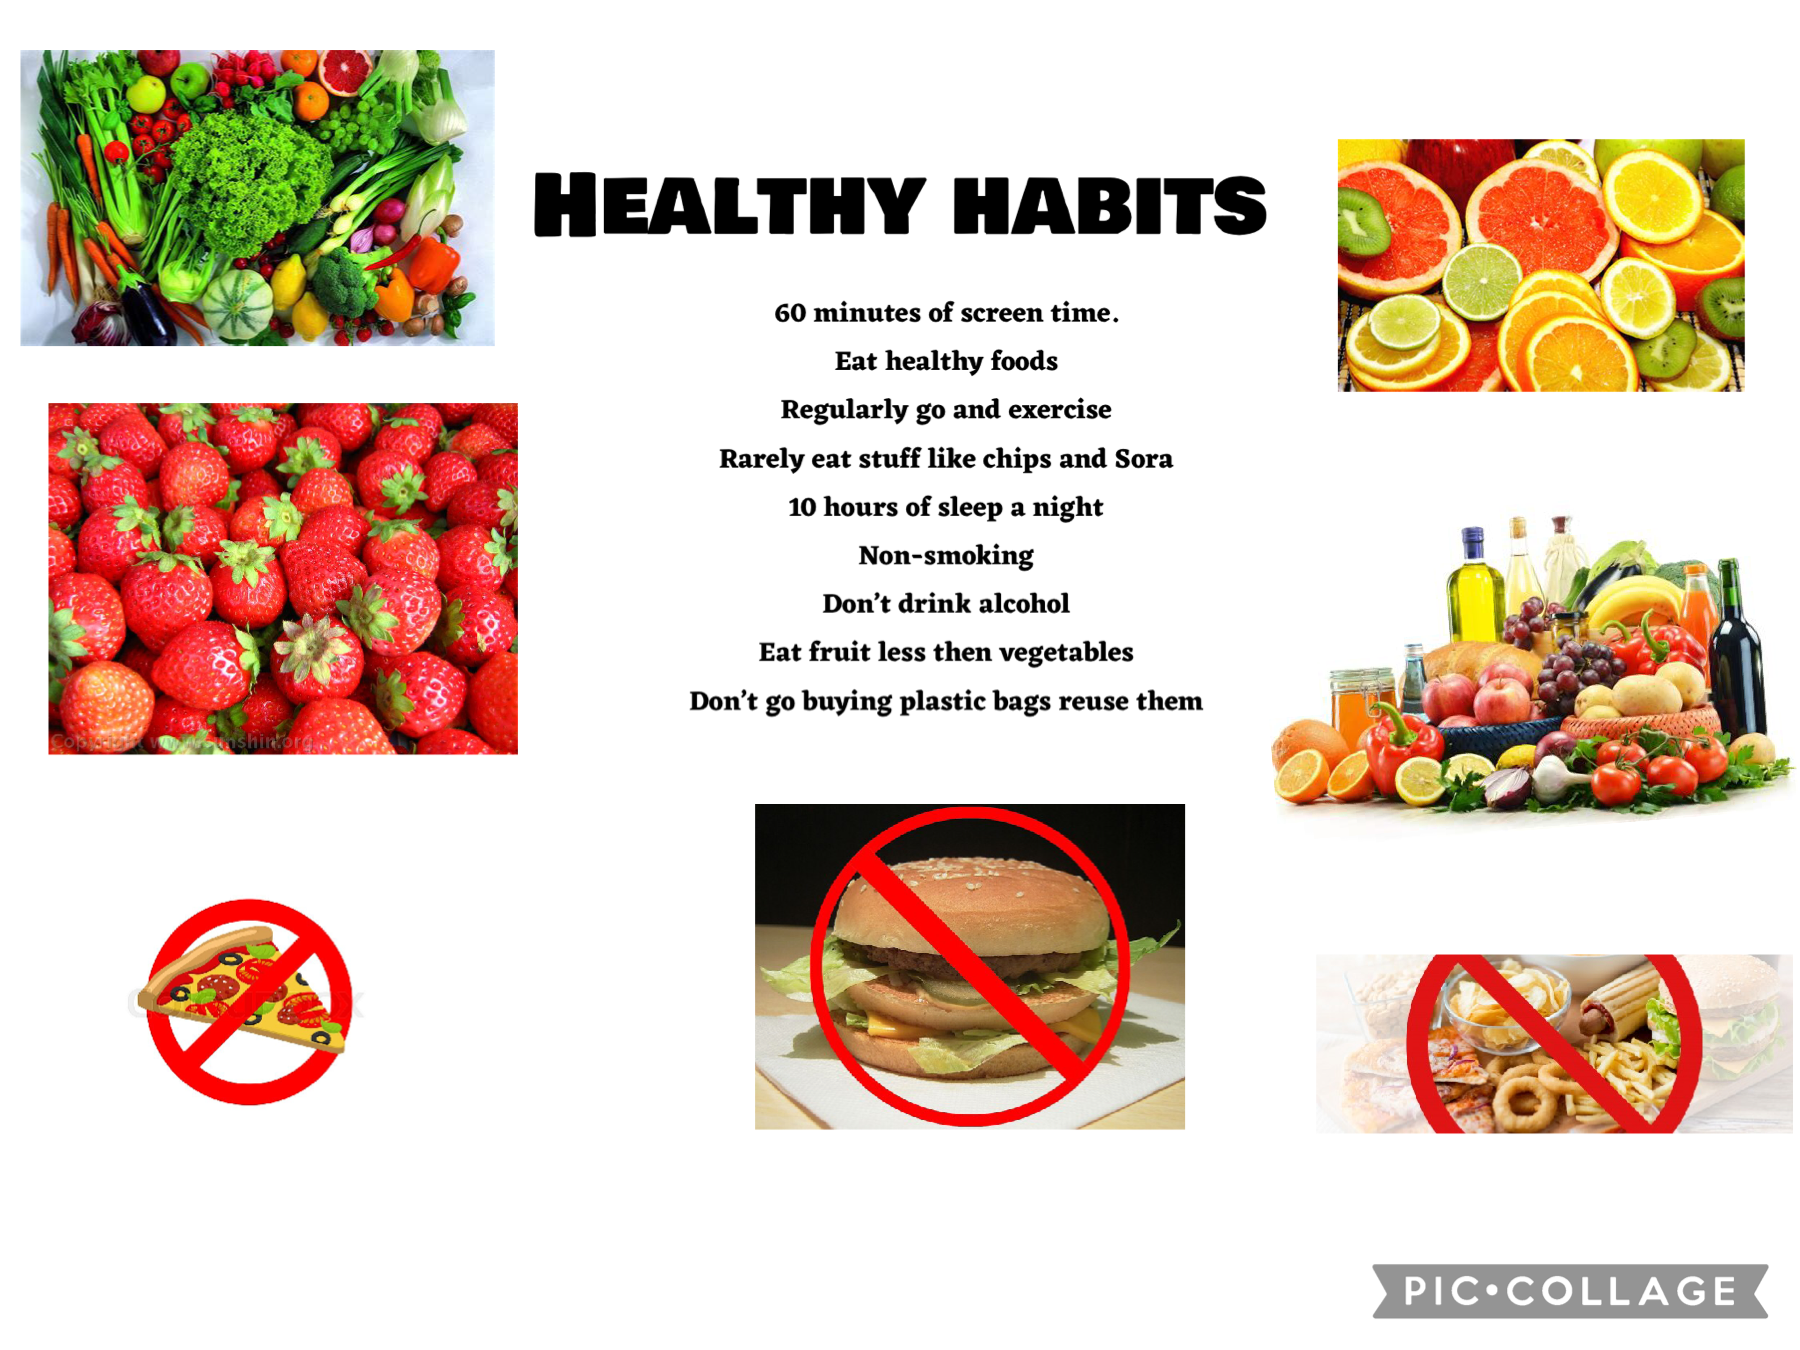 Healthy habits
